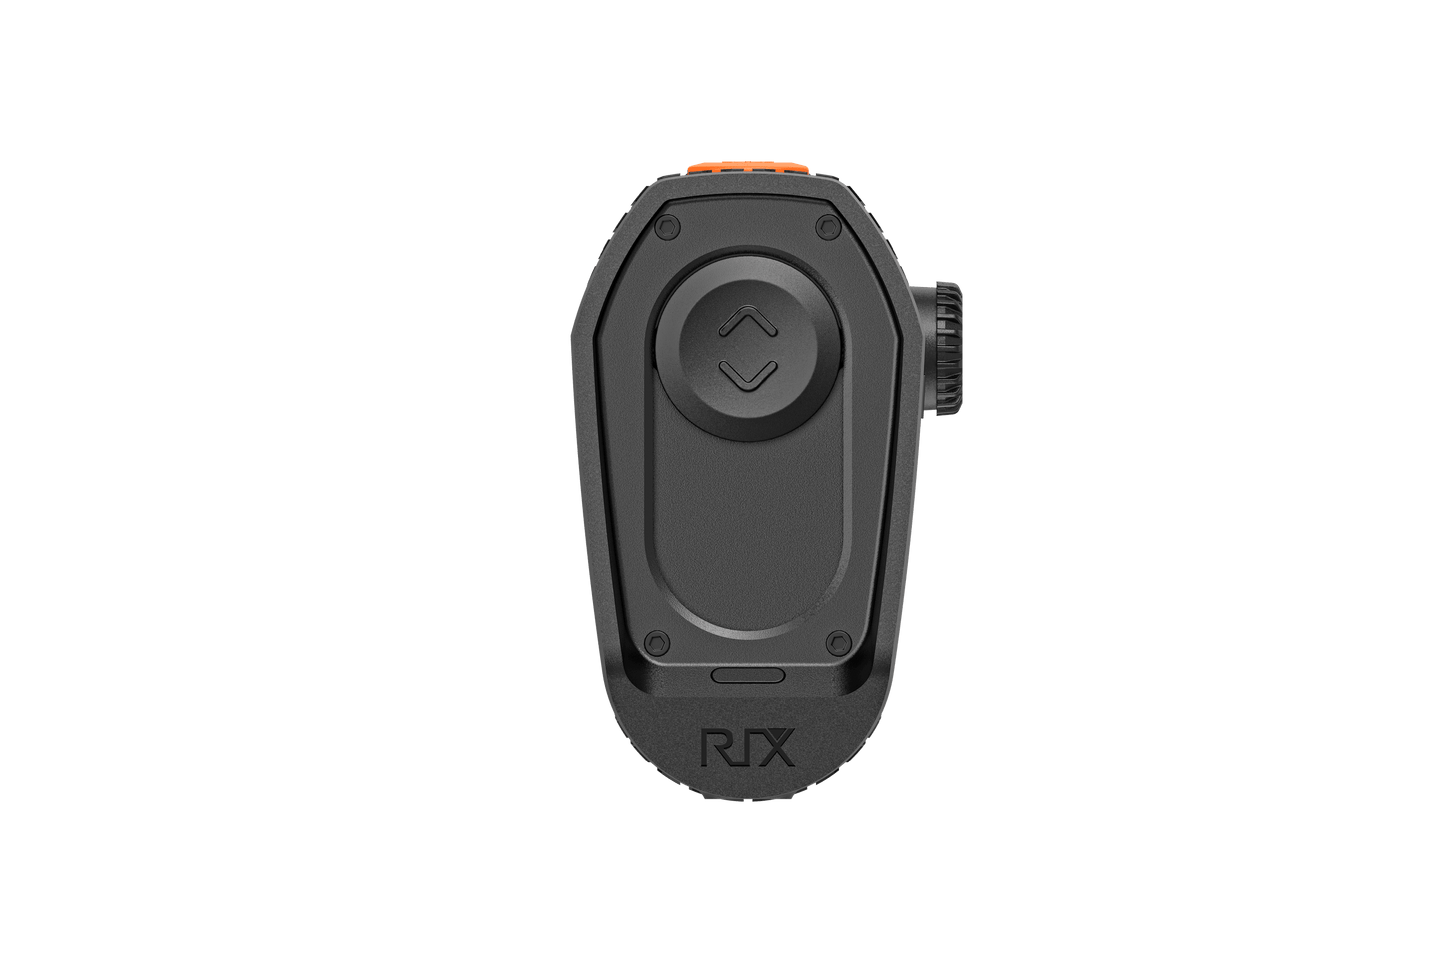 RIX Optics Pocket K2 256 Thermal Monocular 9mm - NVU